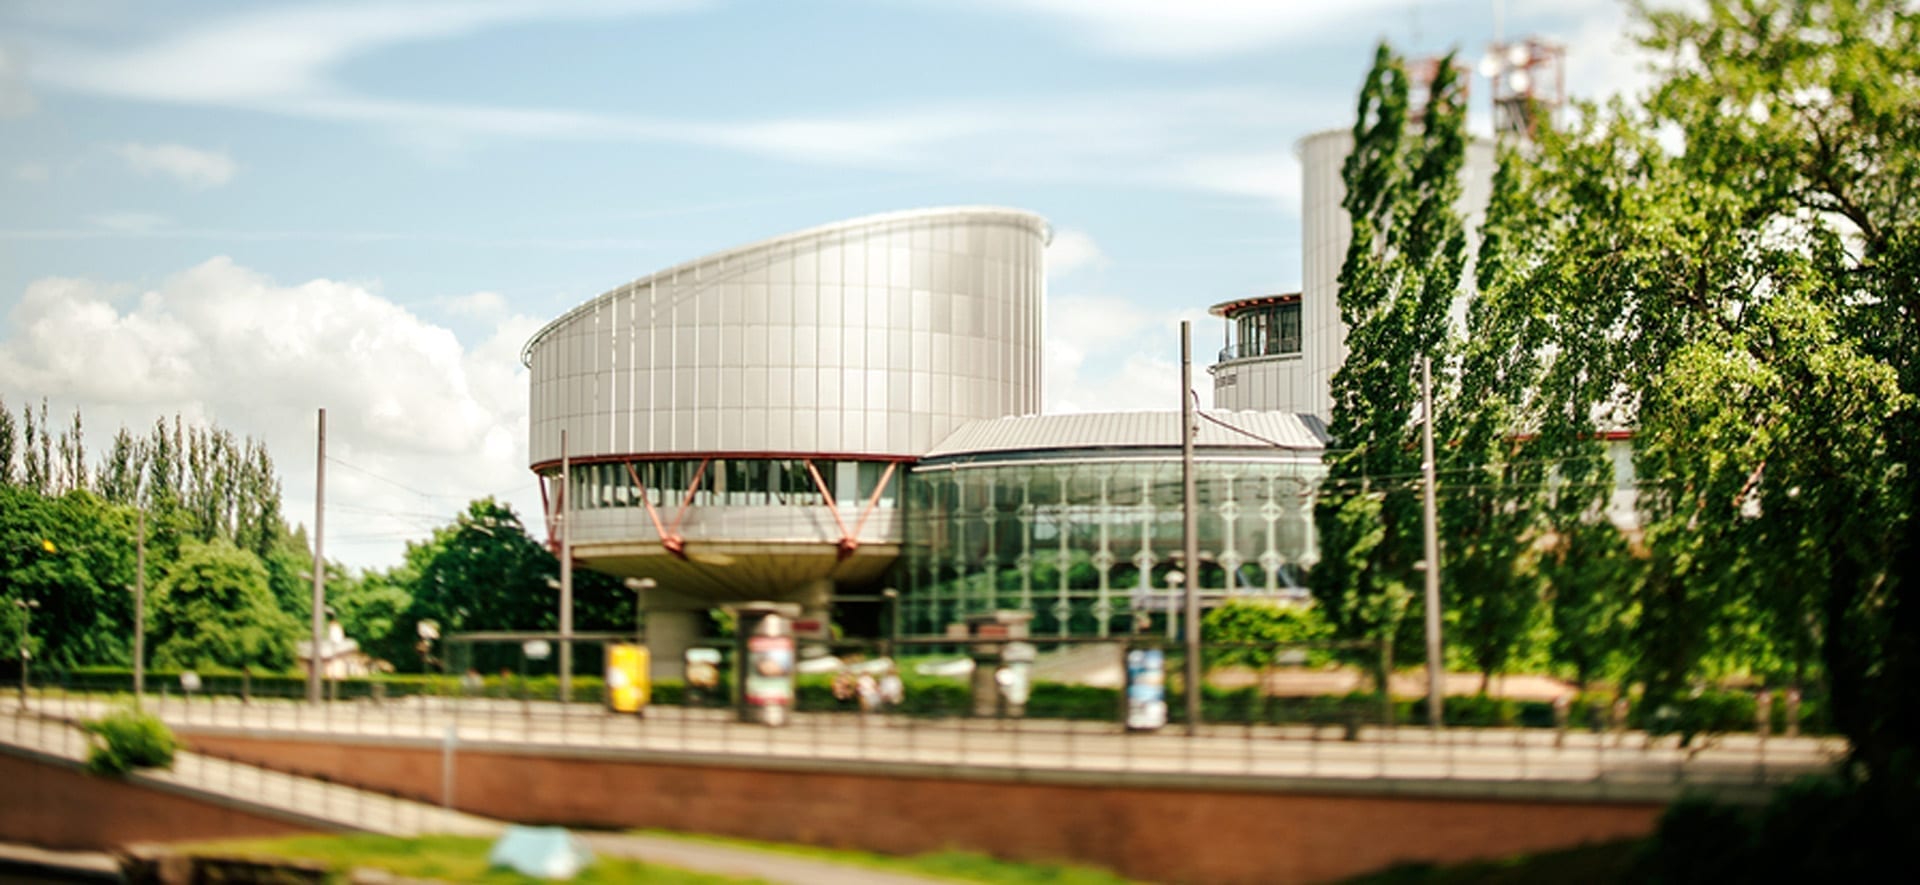 Lutte pour la liberté de conscience devant la Cour suprême européenne